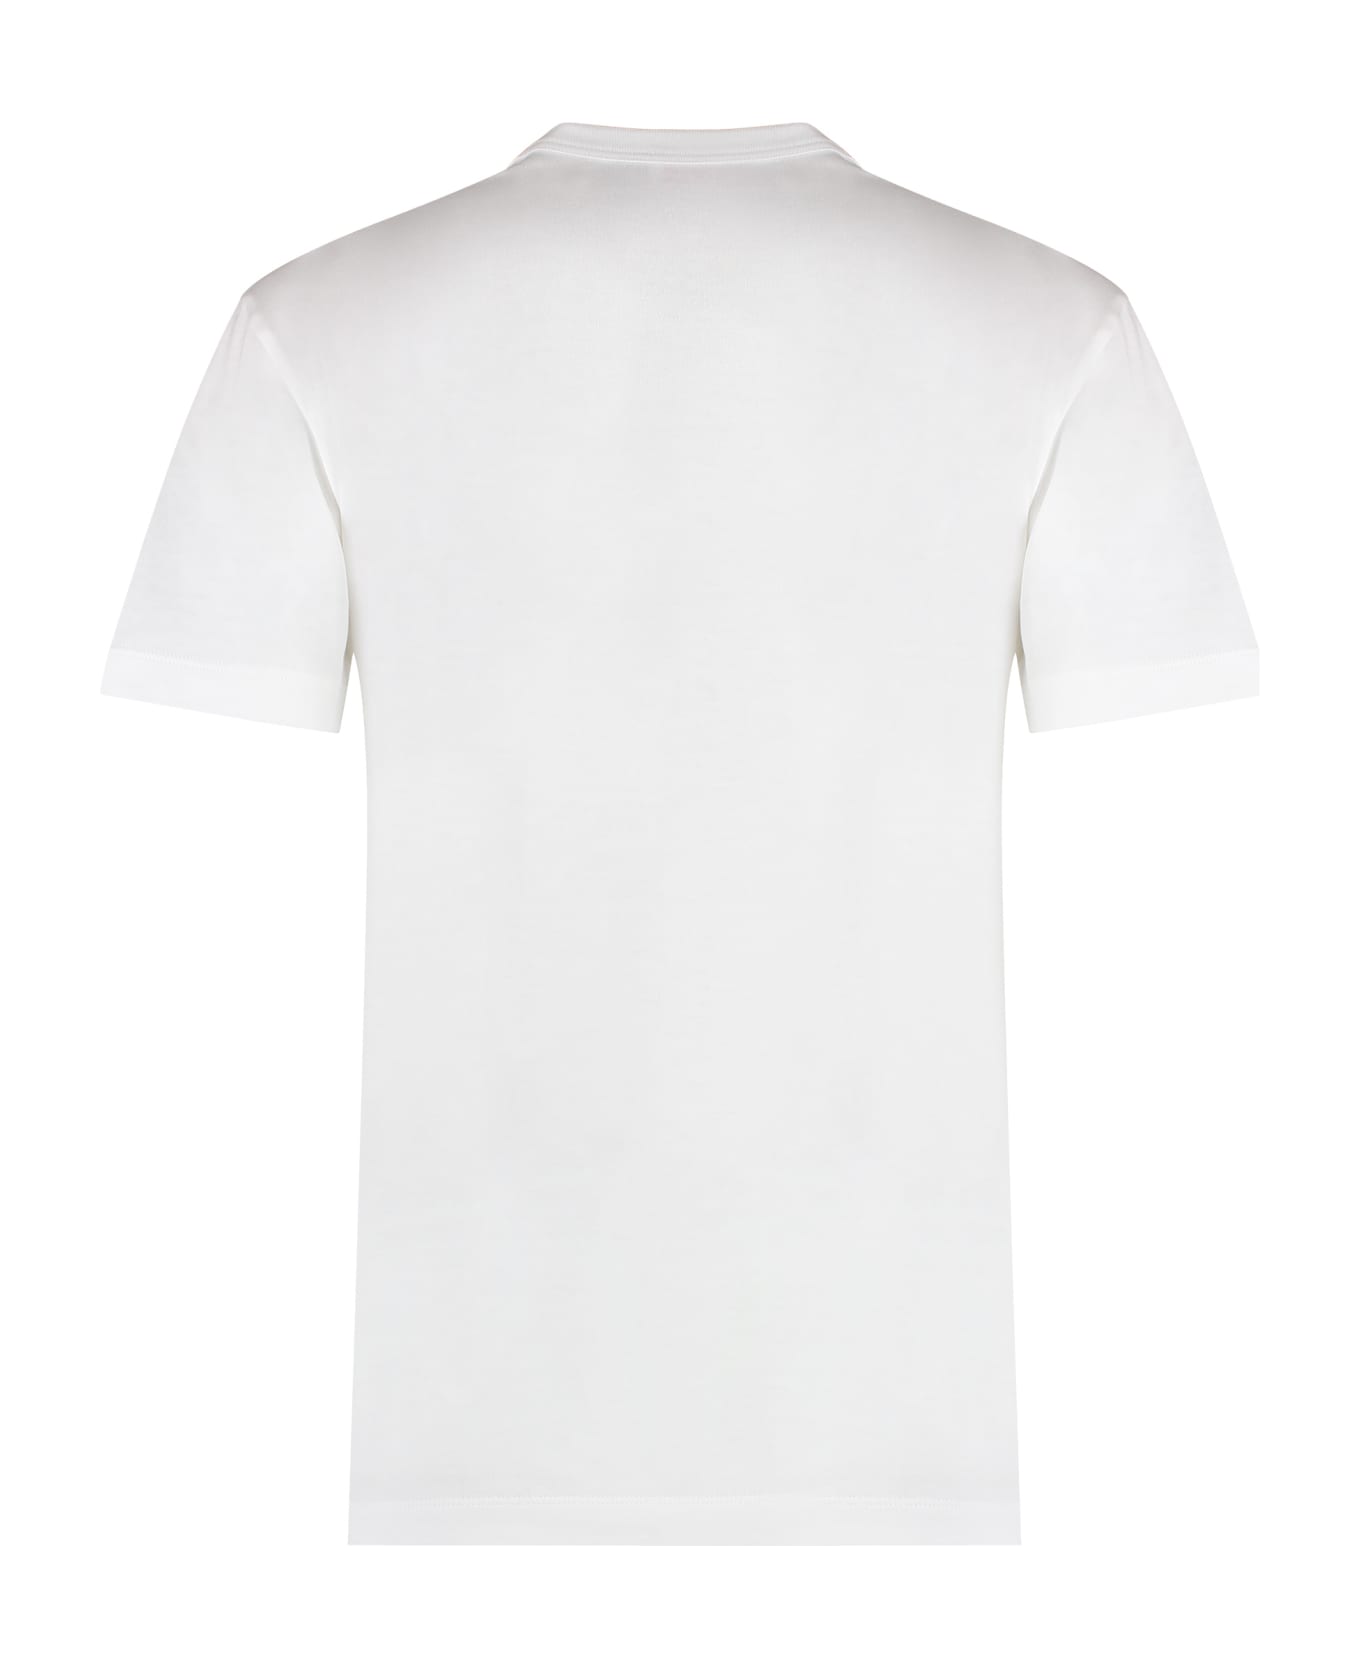 Pucci Logo Print T-shirt - White Tシャツ